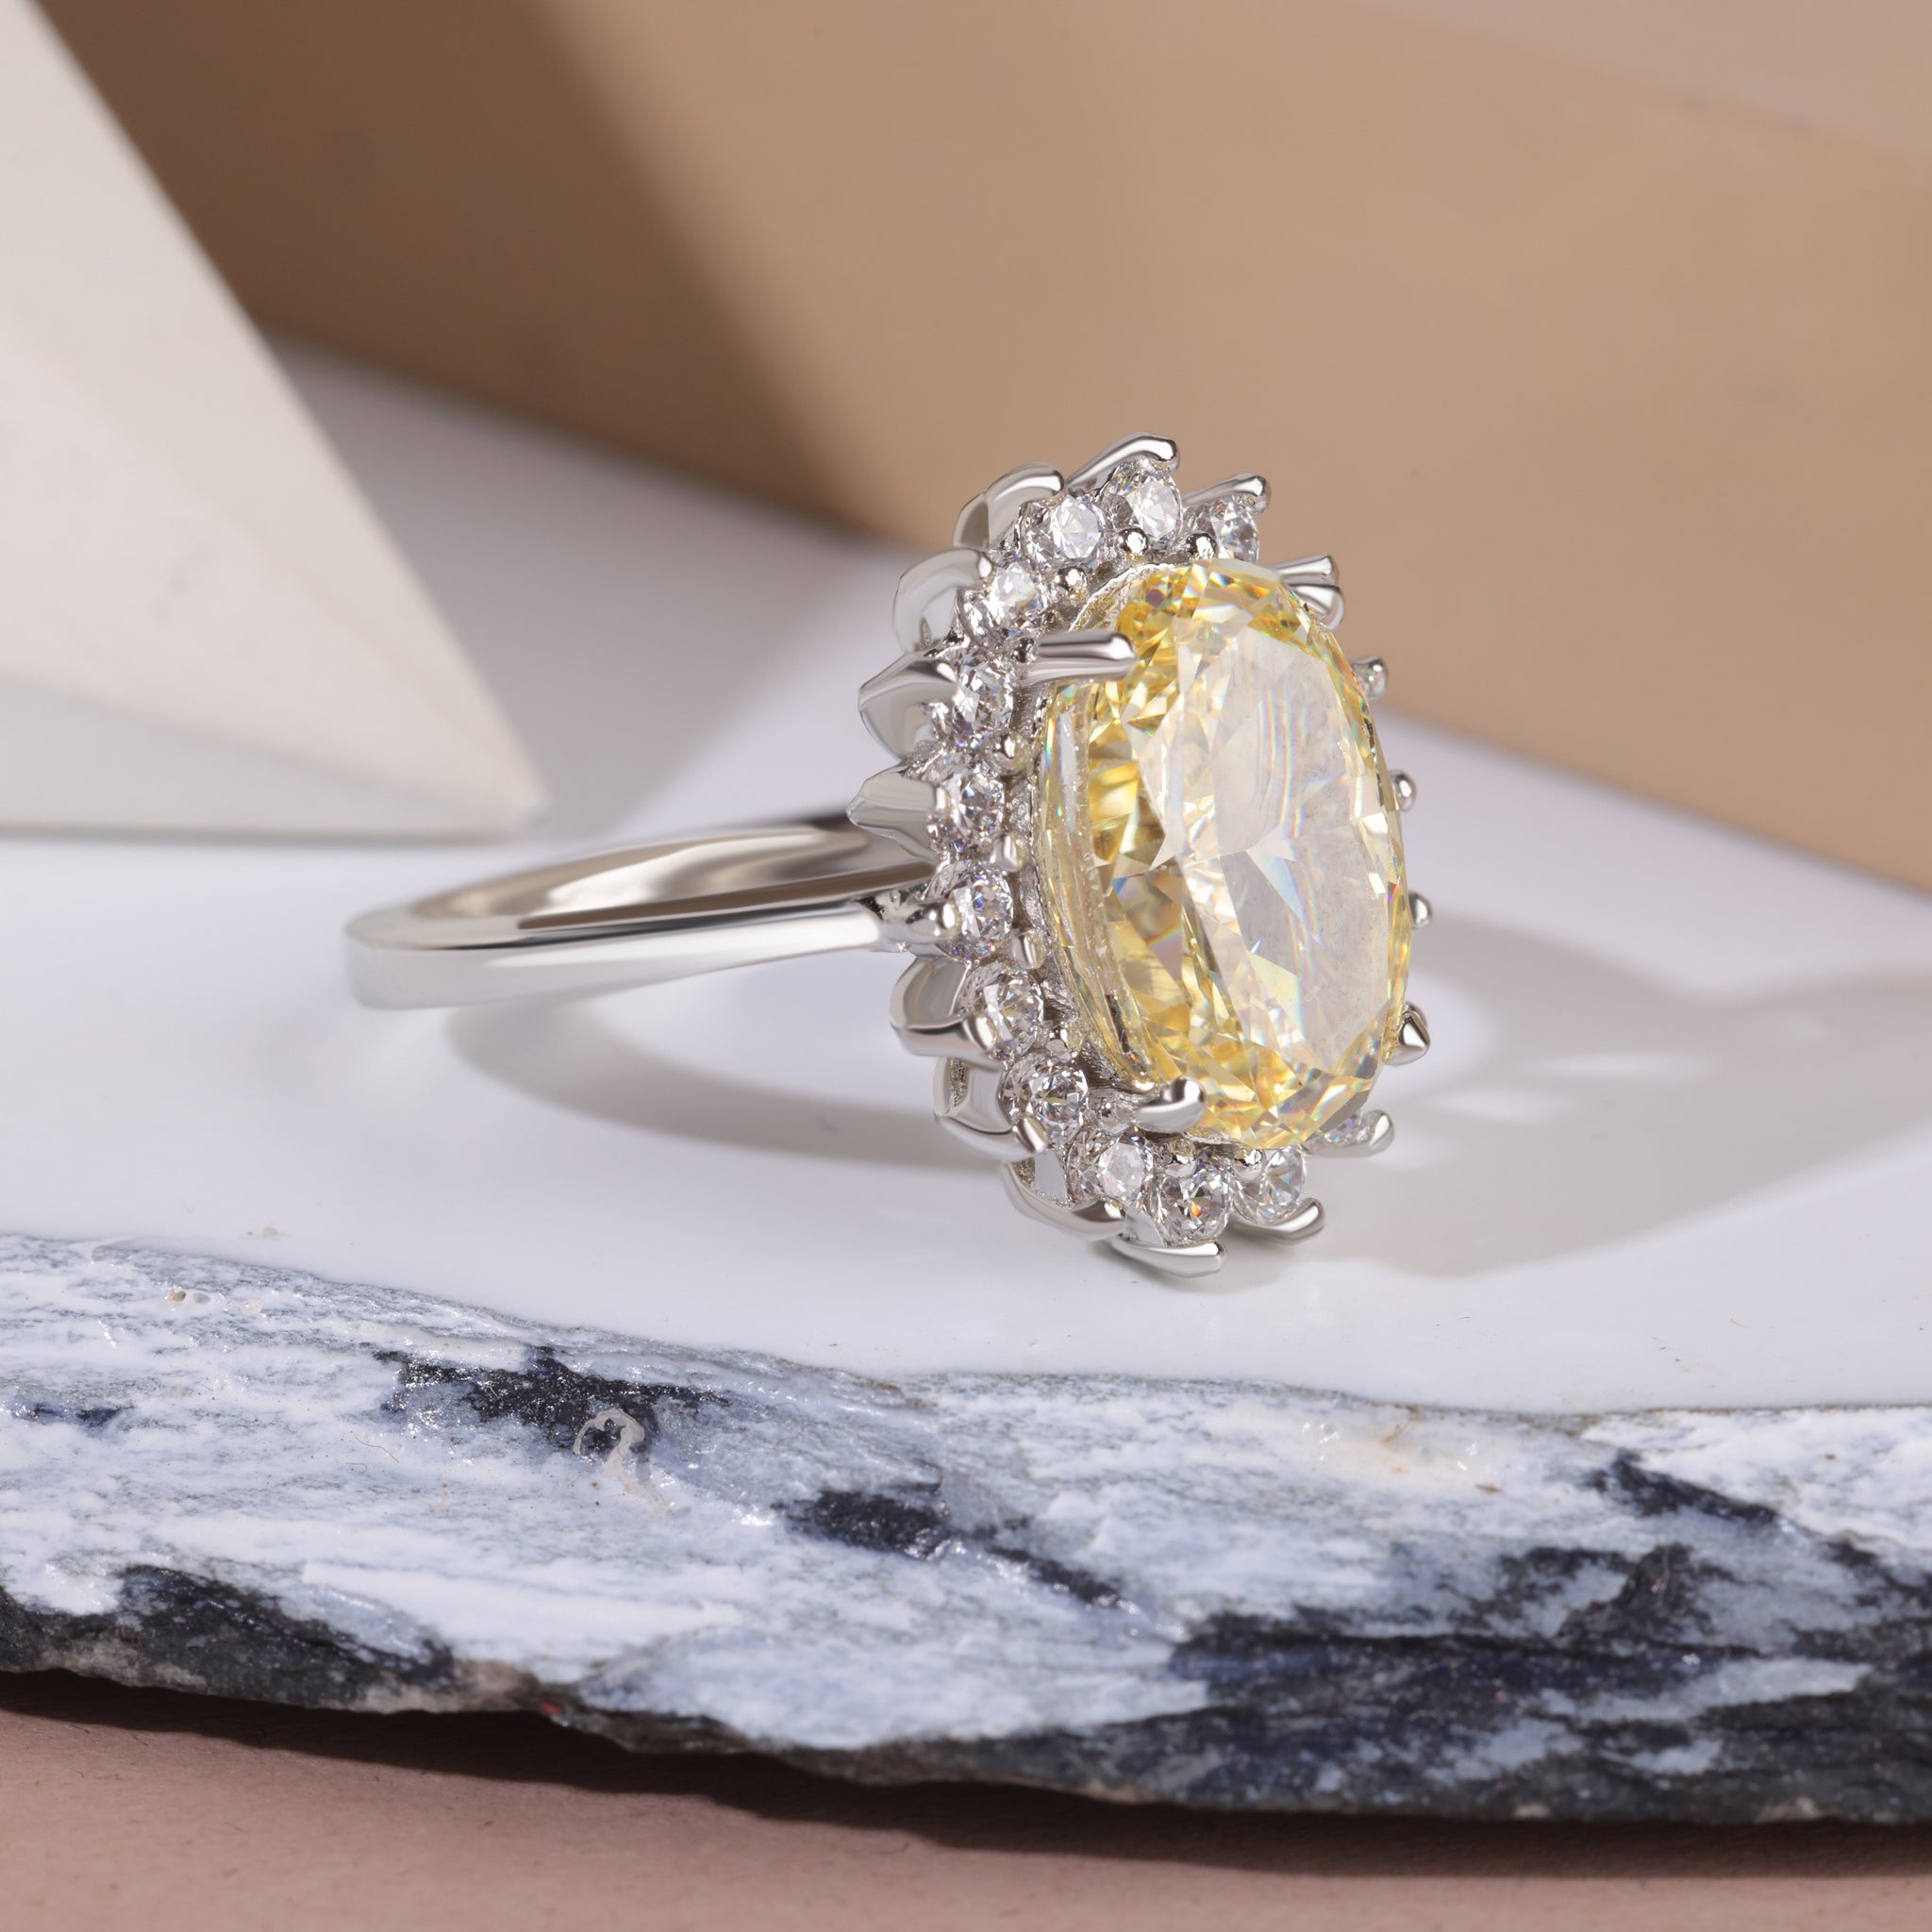 Fancy Light Yellow Diamond Ring In Silver